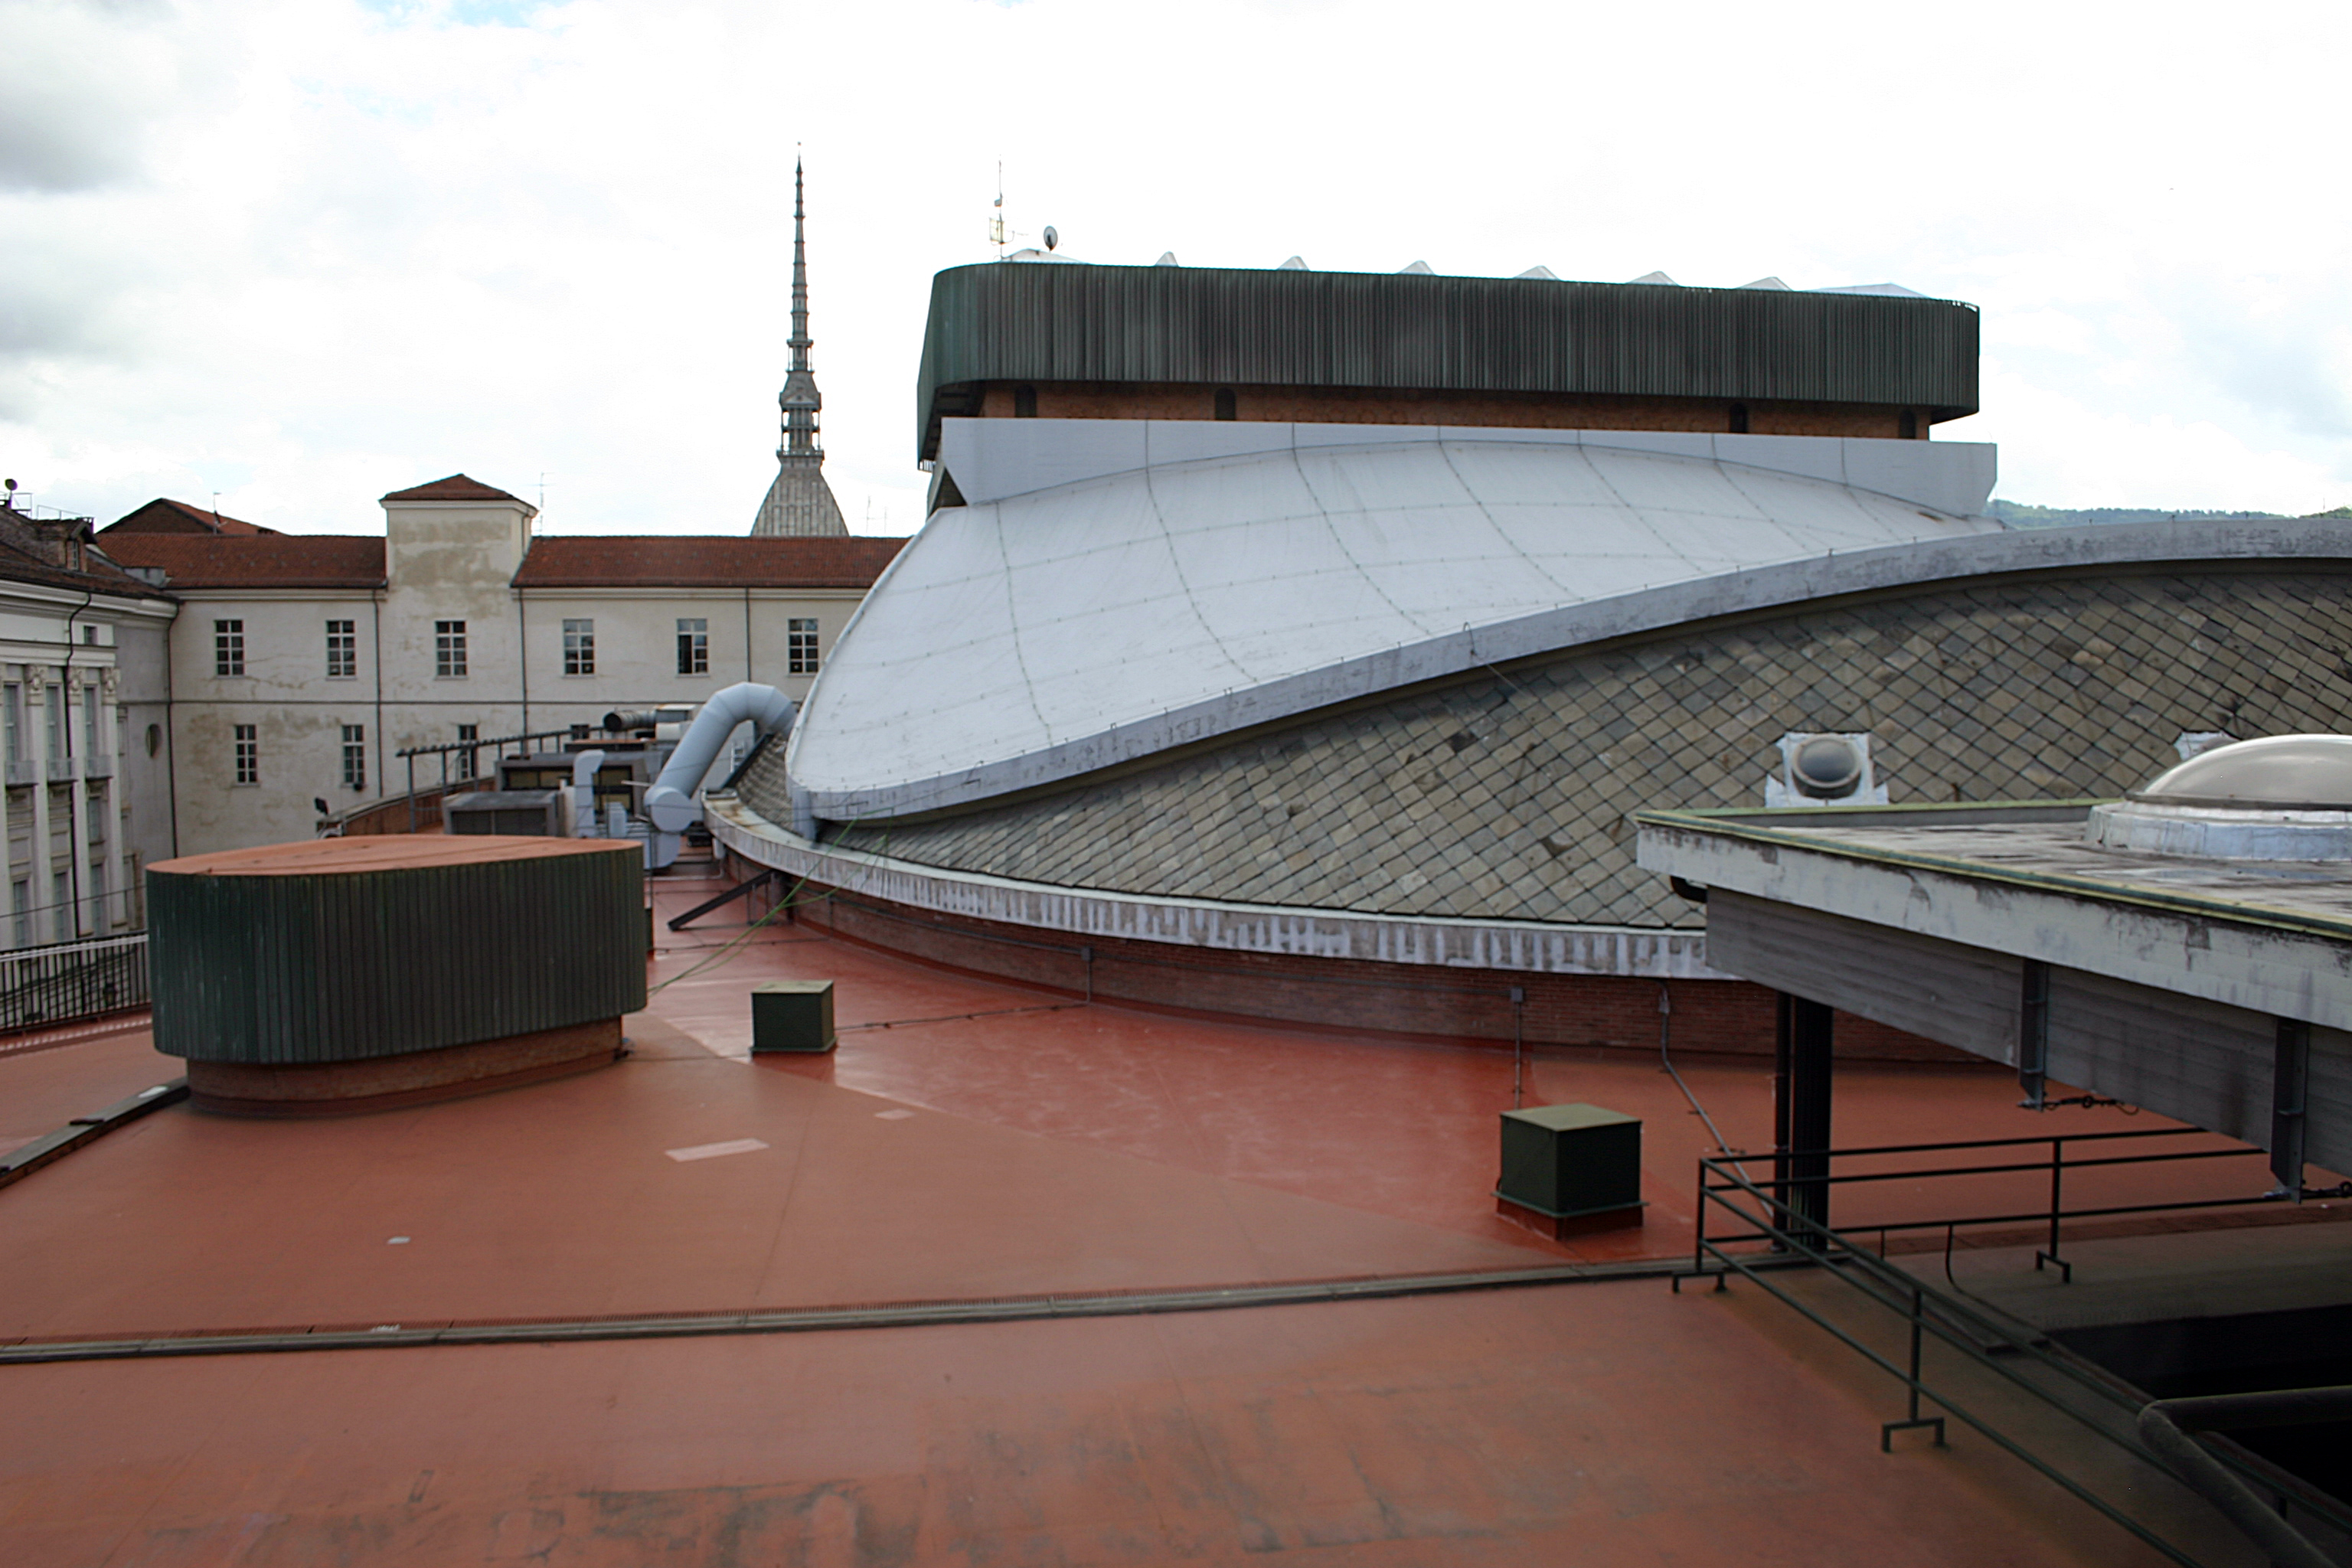 Il terrazzo del Teatro Regio con la peculiare copertura a forma di paraboloide iperbolico, sormontato dalla torre di scena